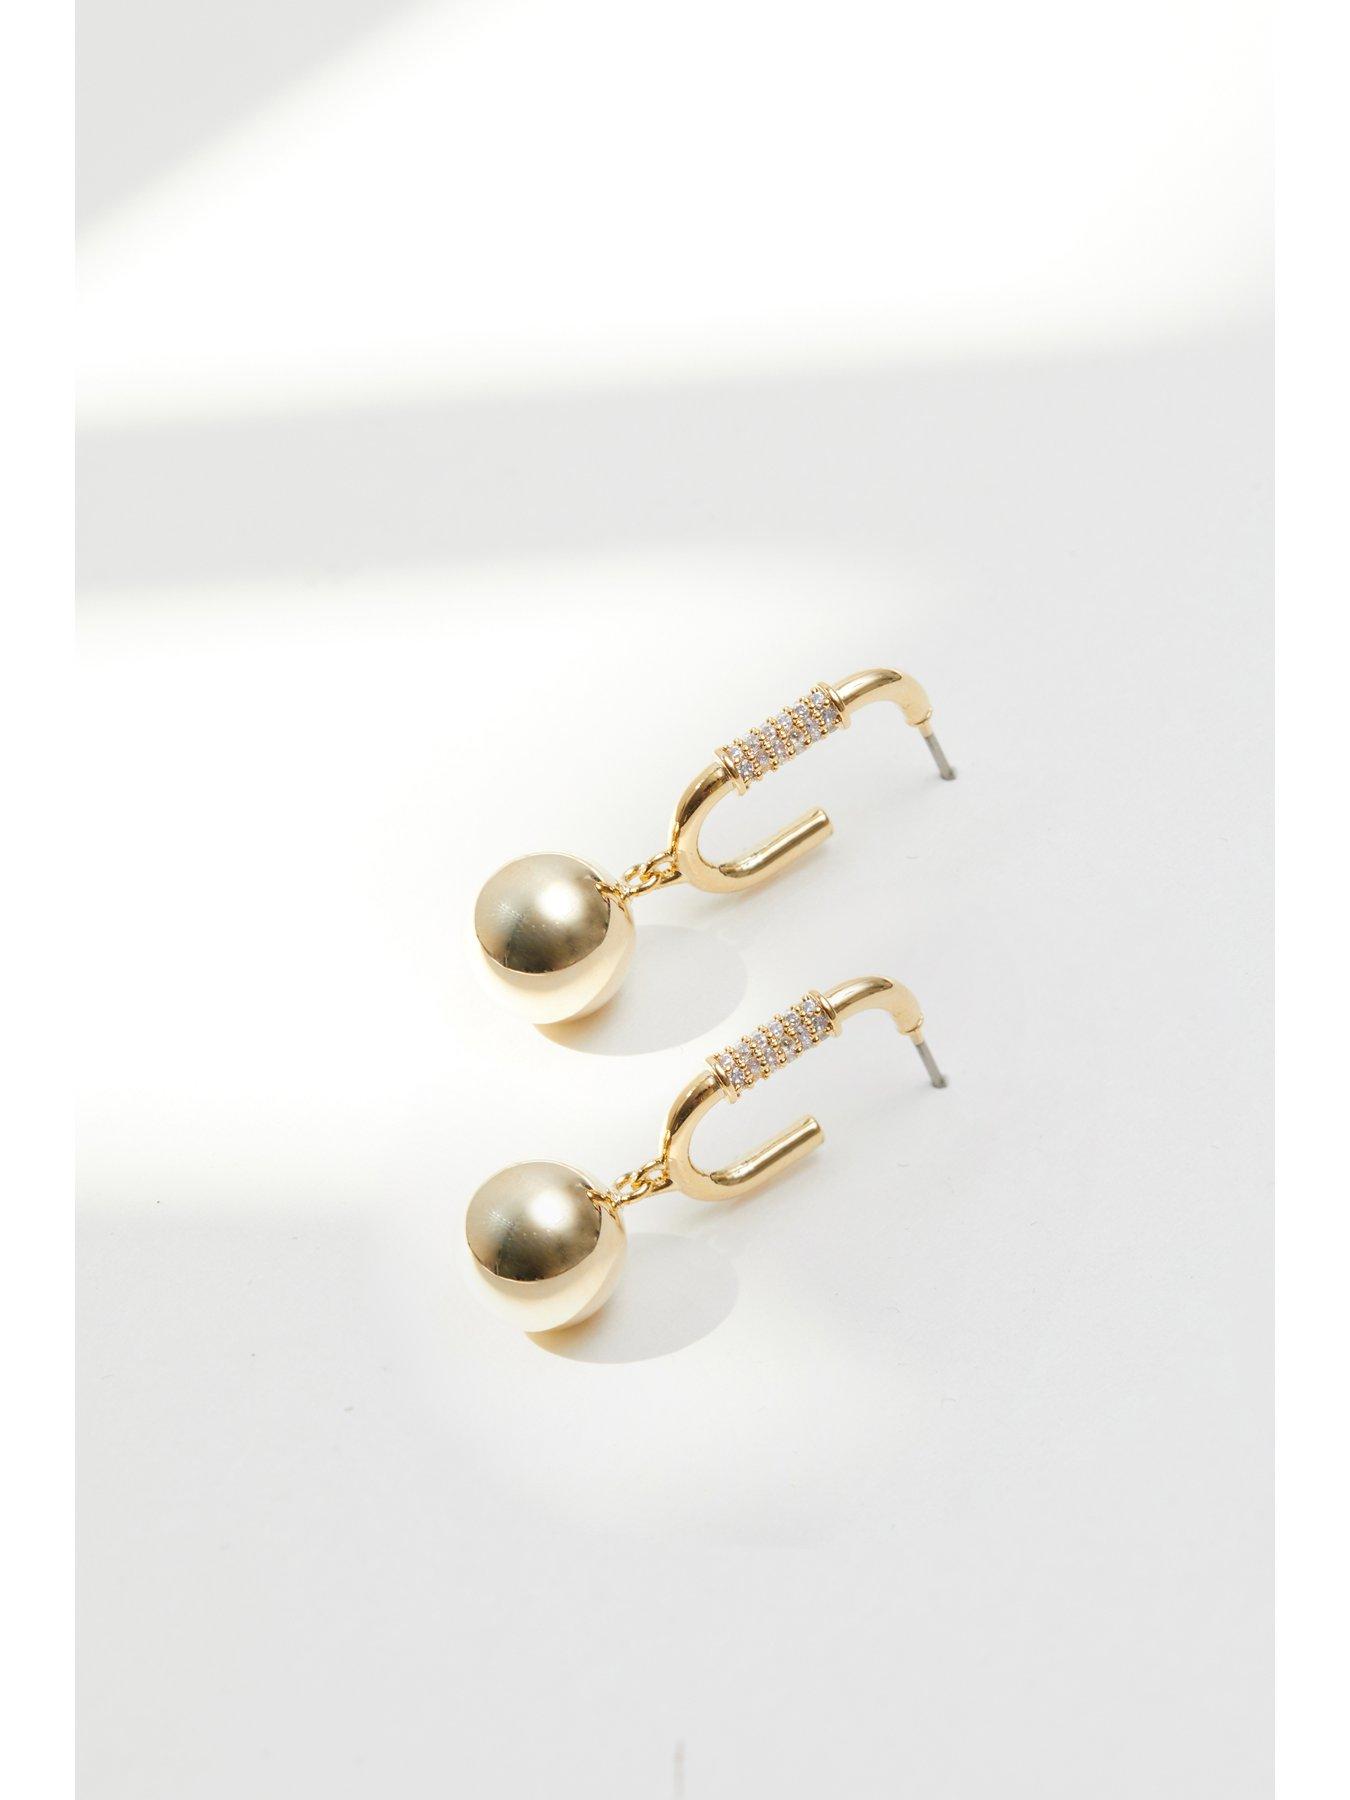 Tiffany HardWear Ball Earrings in Yellow Gold, 8 mm